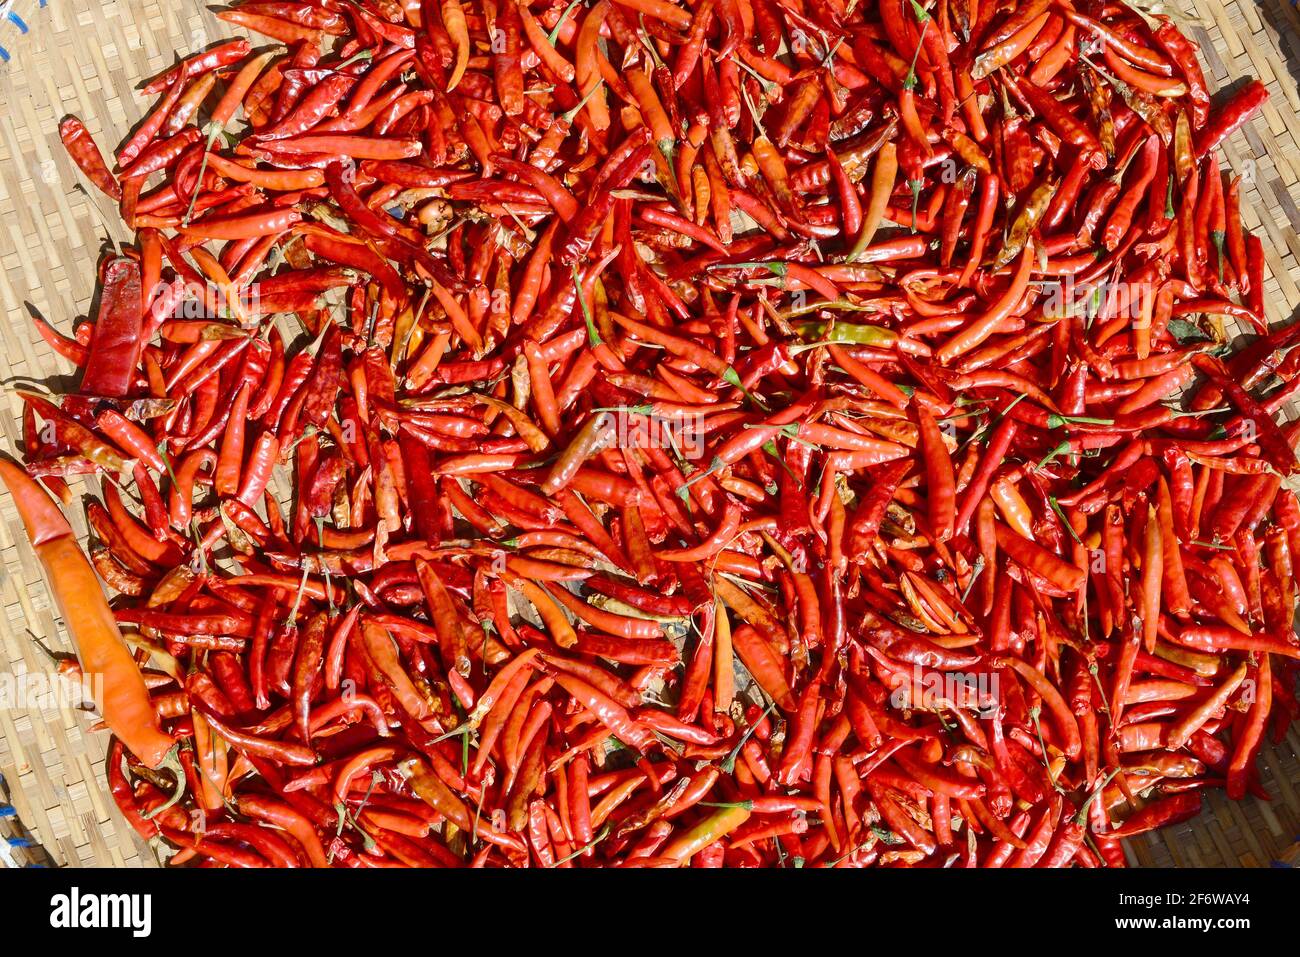 Bangkok, market (chili pepper). Thailand. Stock Photo